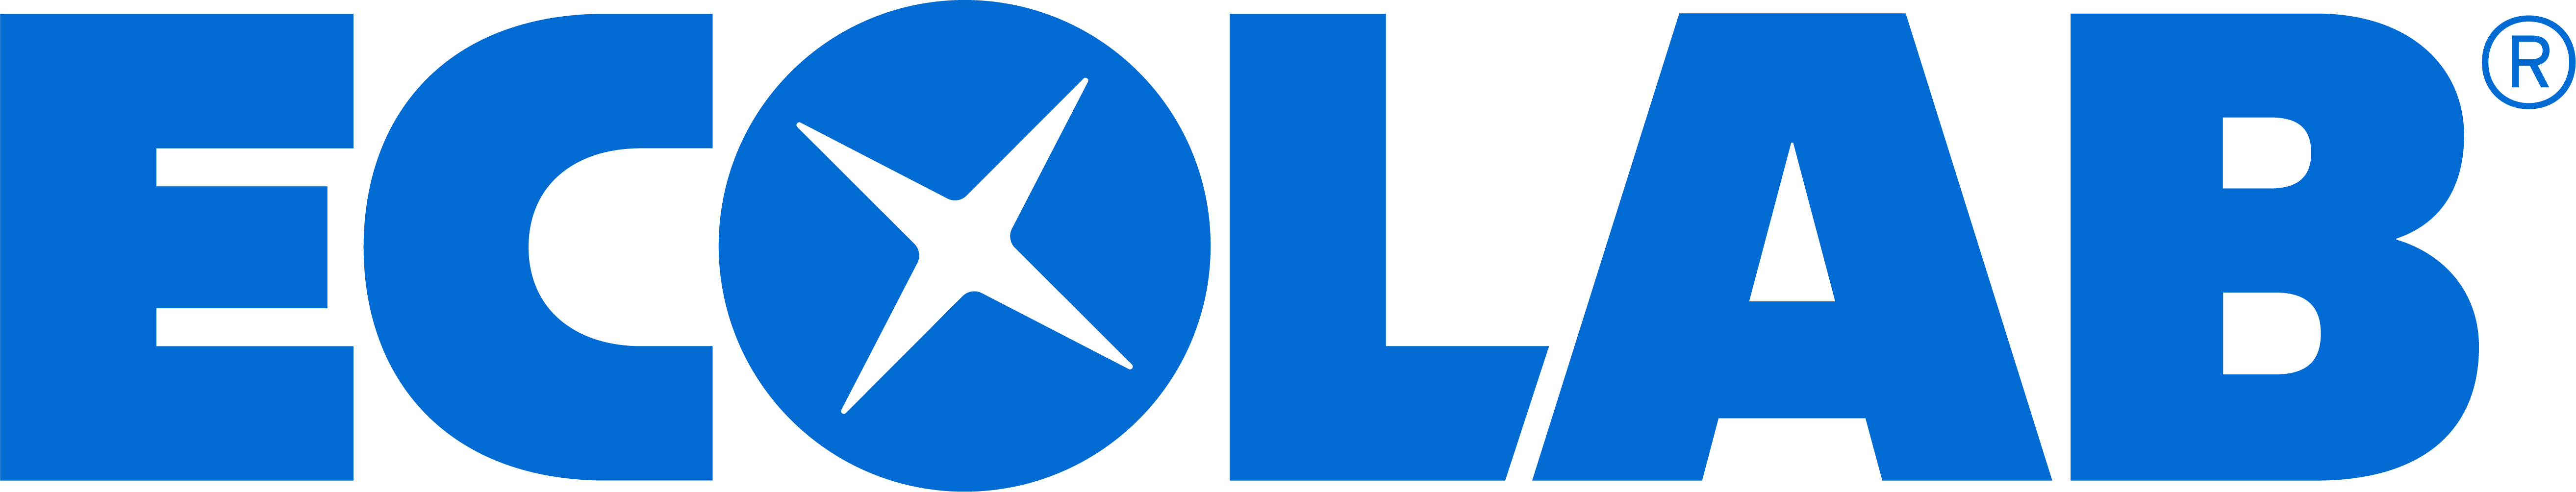 艺康（中国）投资有限公司logo